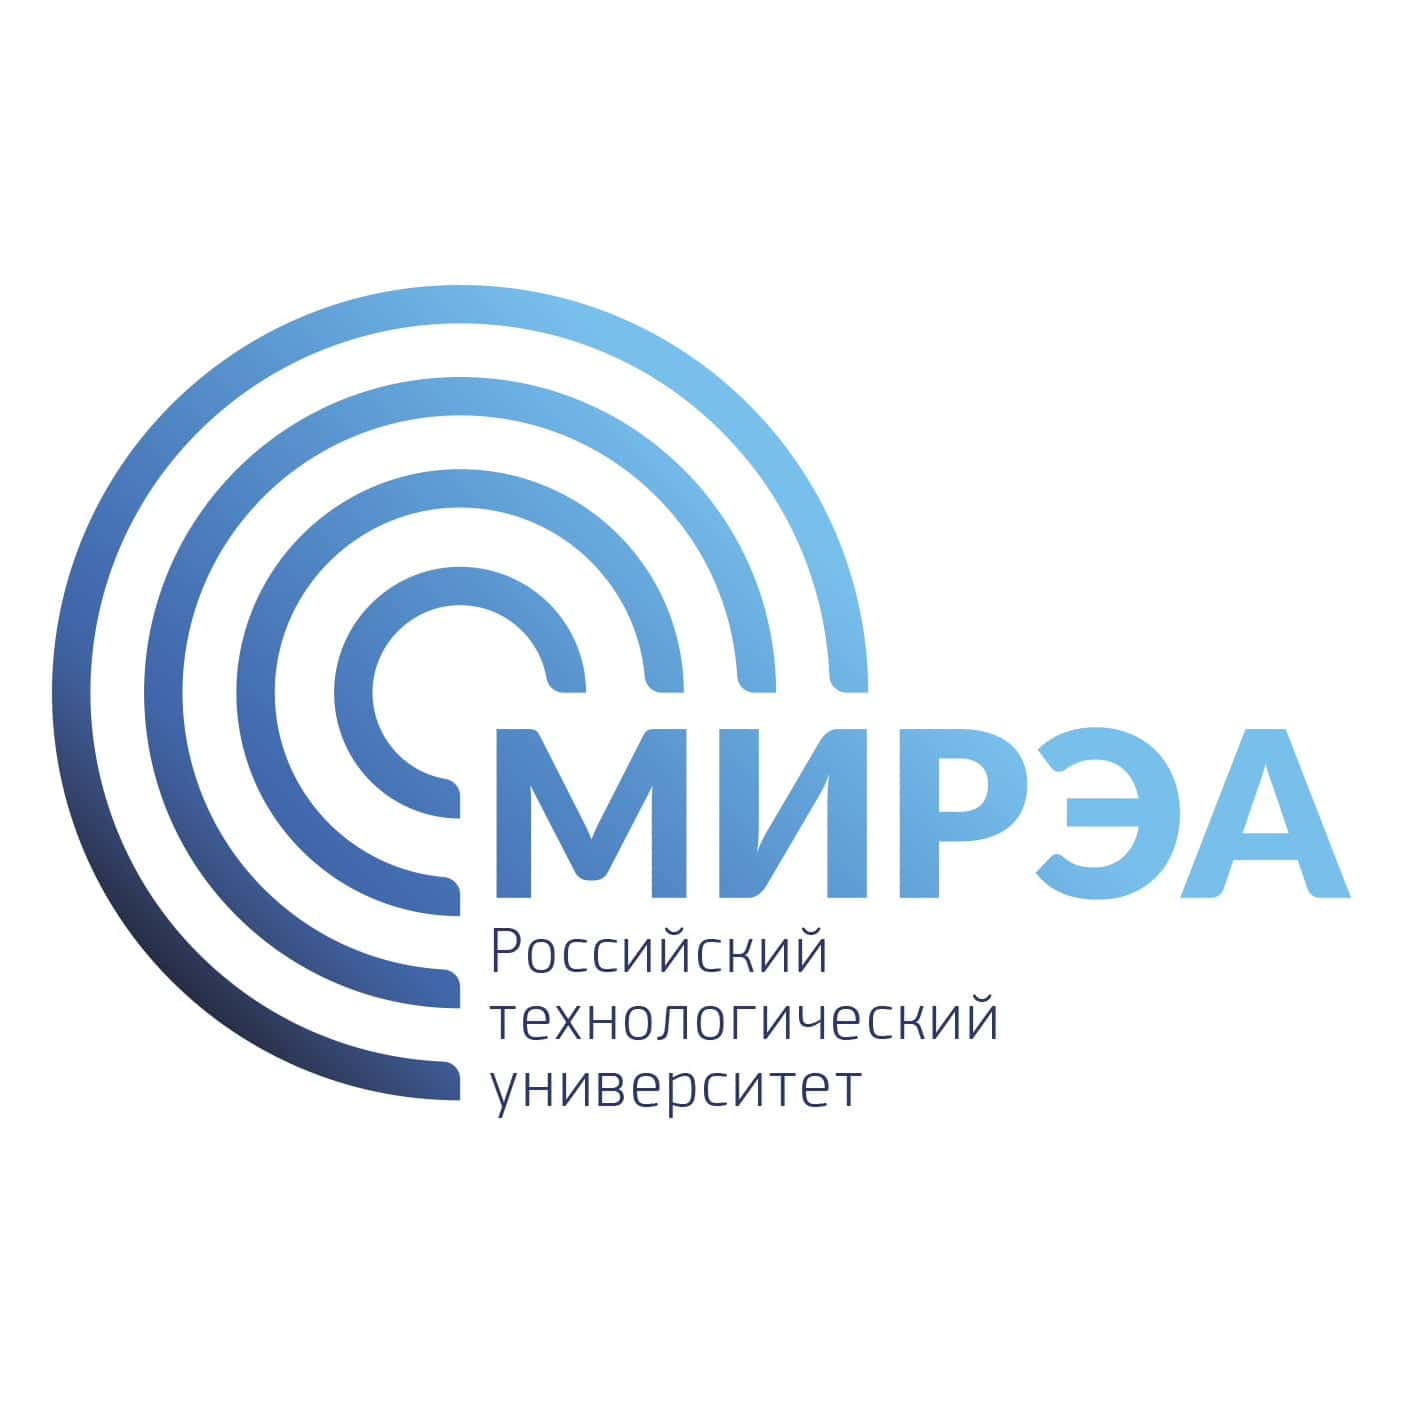  Российский технологический университет logo